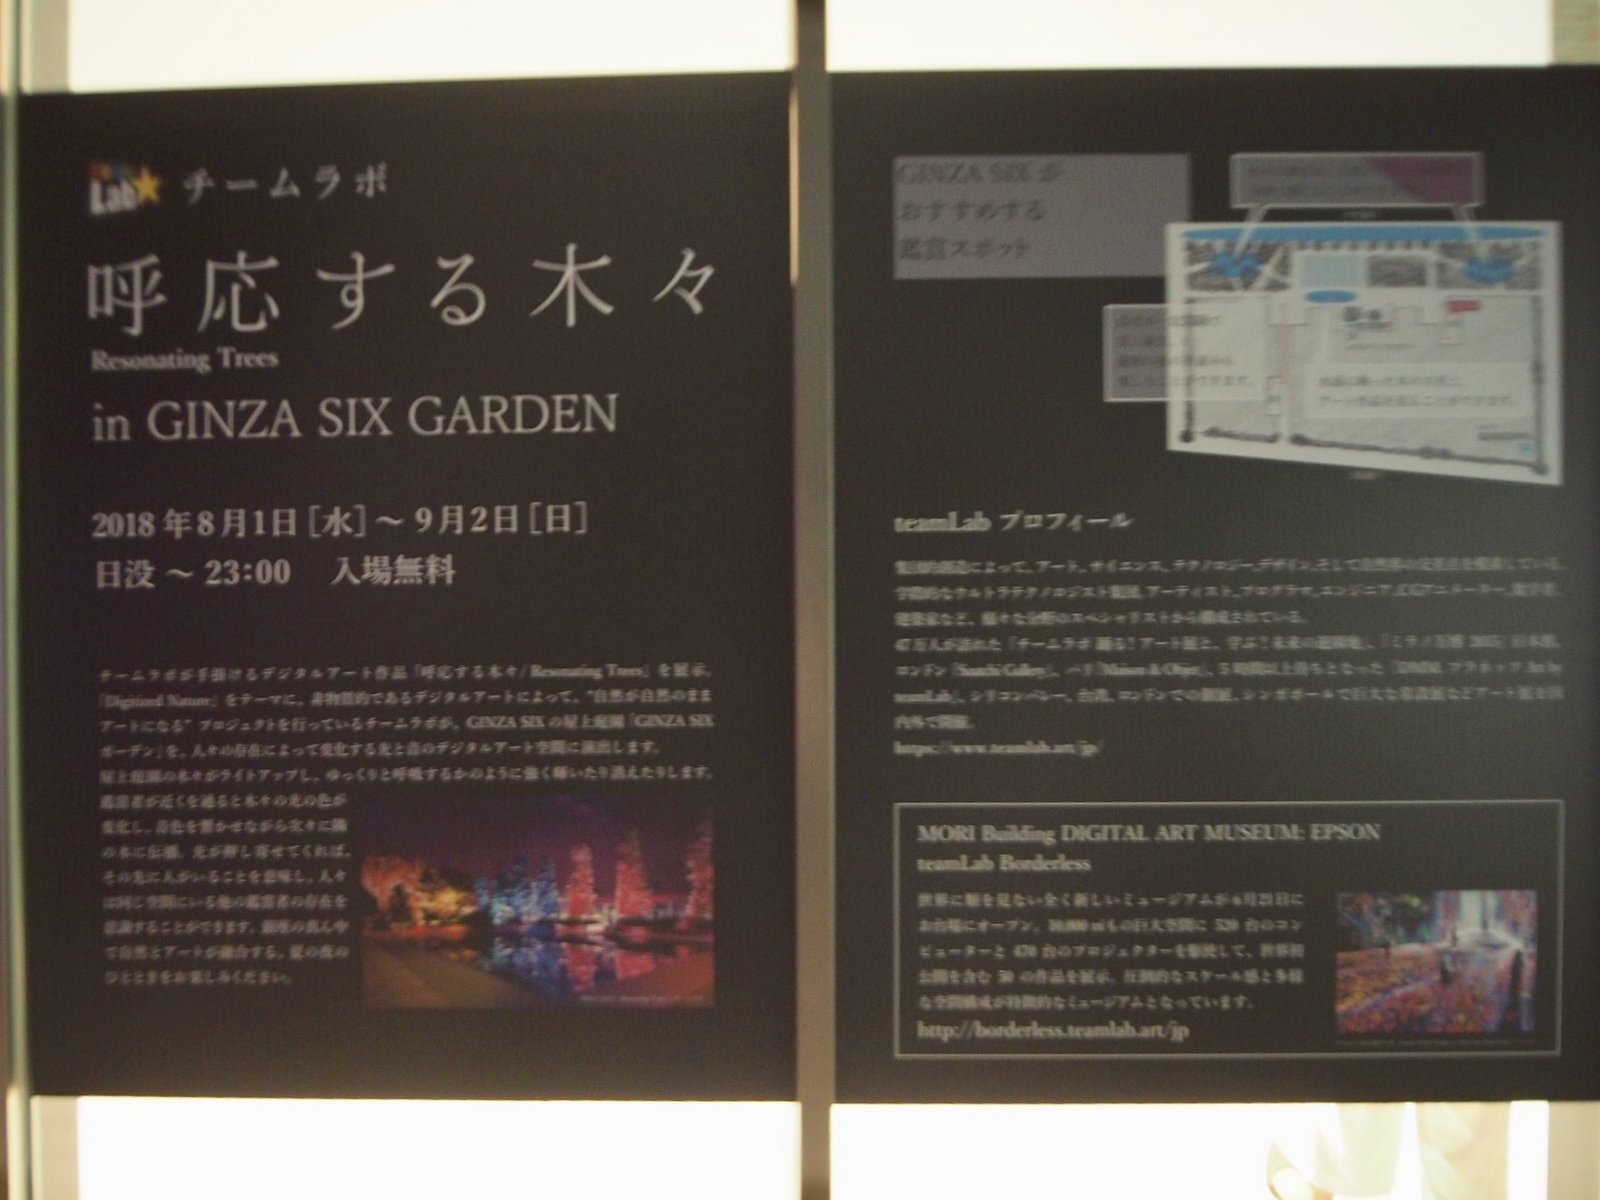 屋上庭園「GINZA SIX ガーデン」